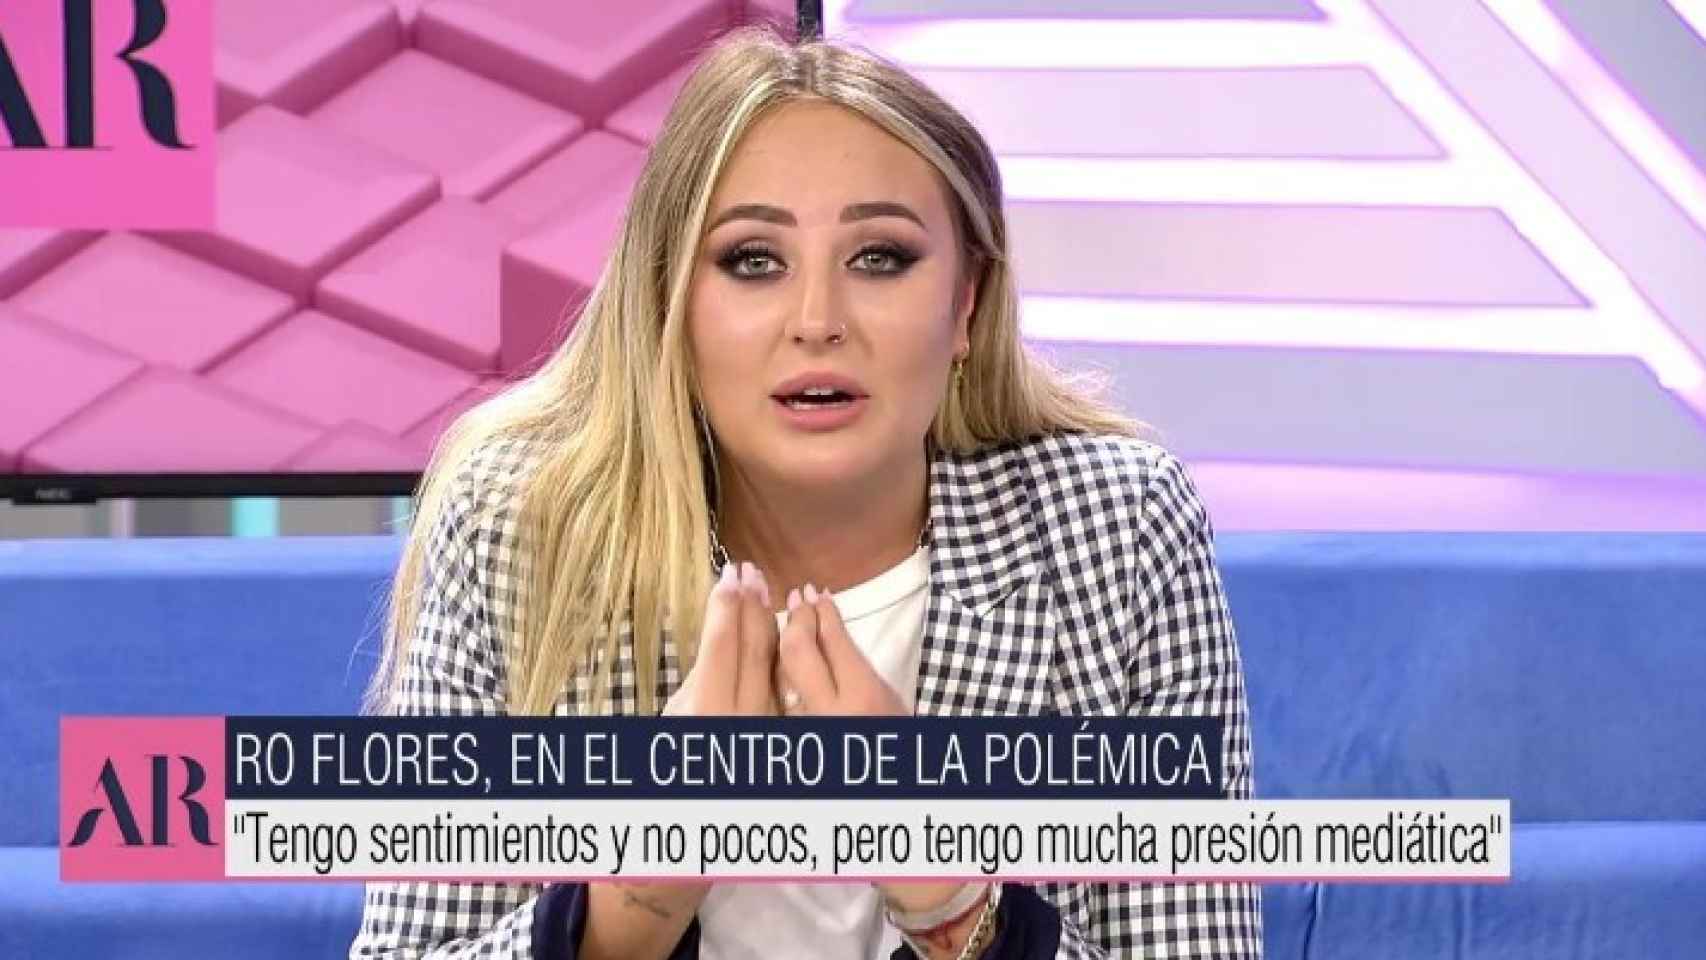 Imagen de Rocó Flores durante su mensaje en 'El programa de Ana Rosa'.